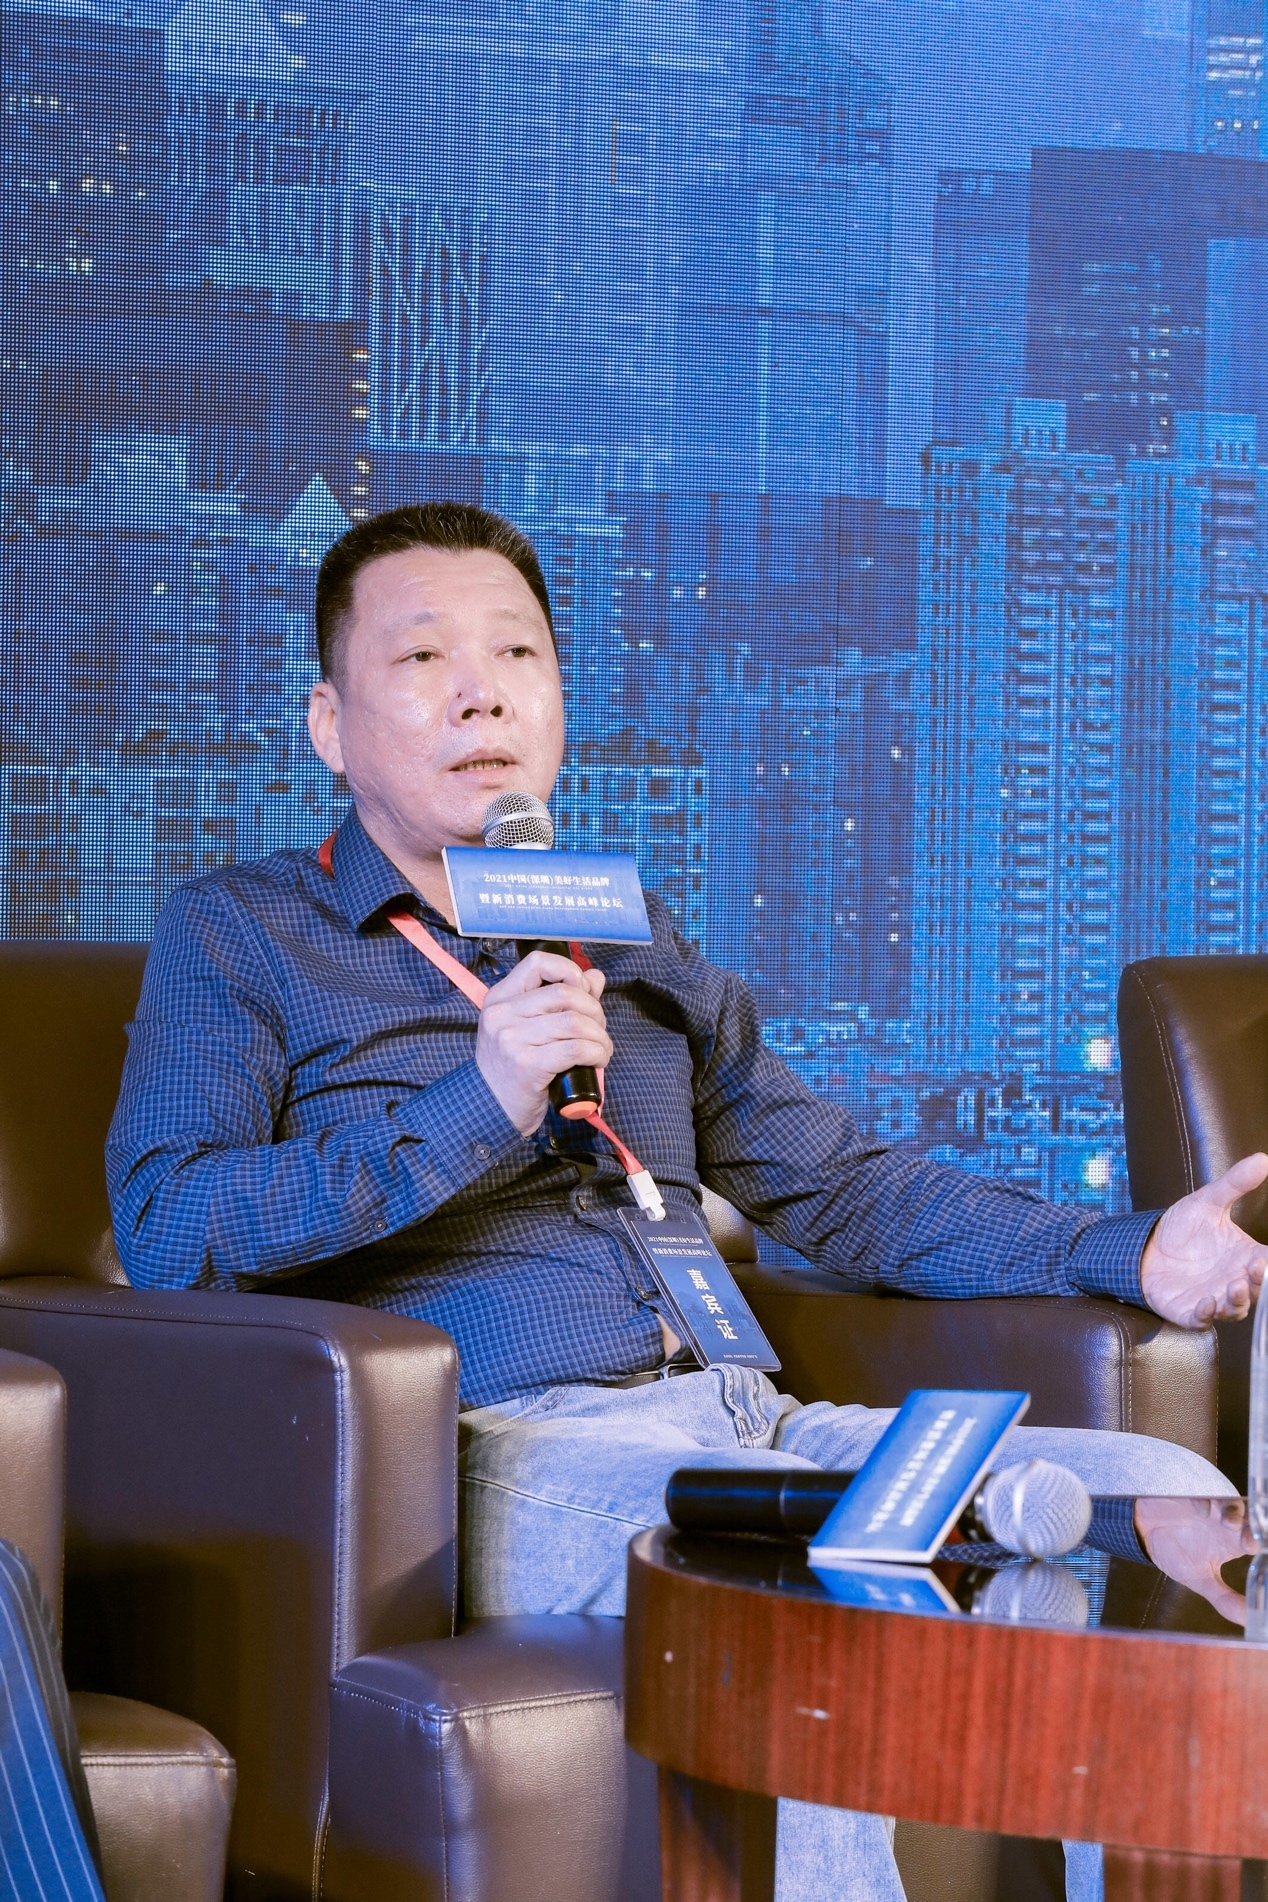 维小饭（维士小盒饭）创始合伙人、总经理叶伟东发表自己的想法